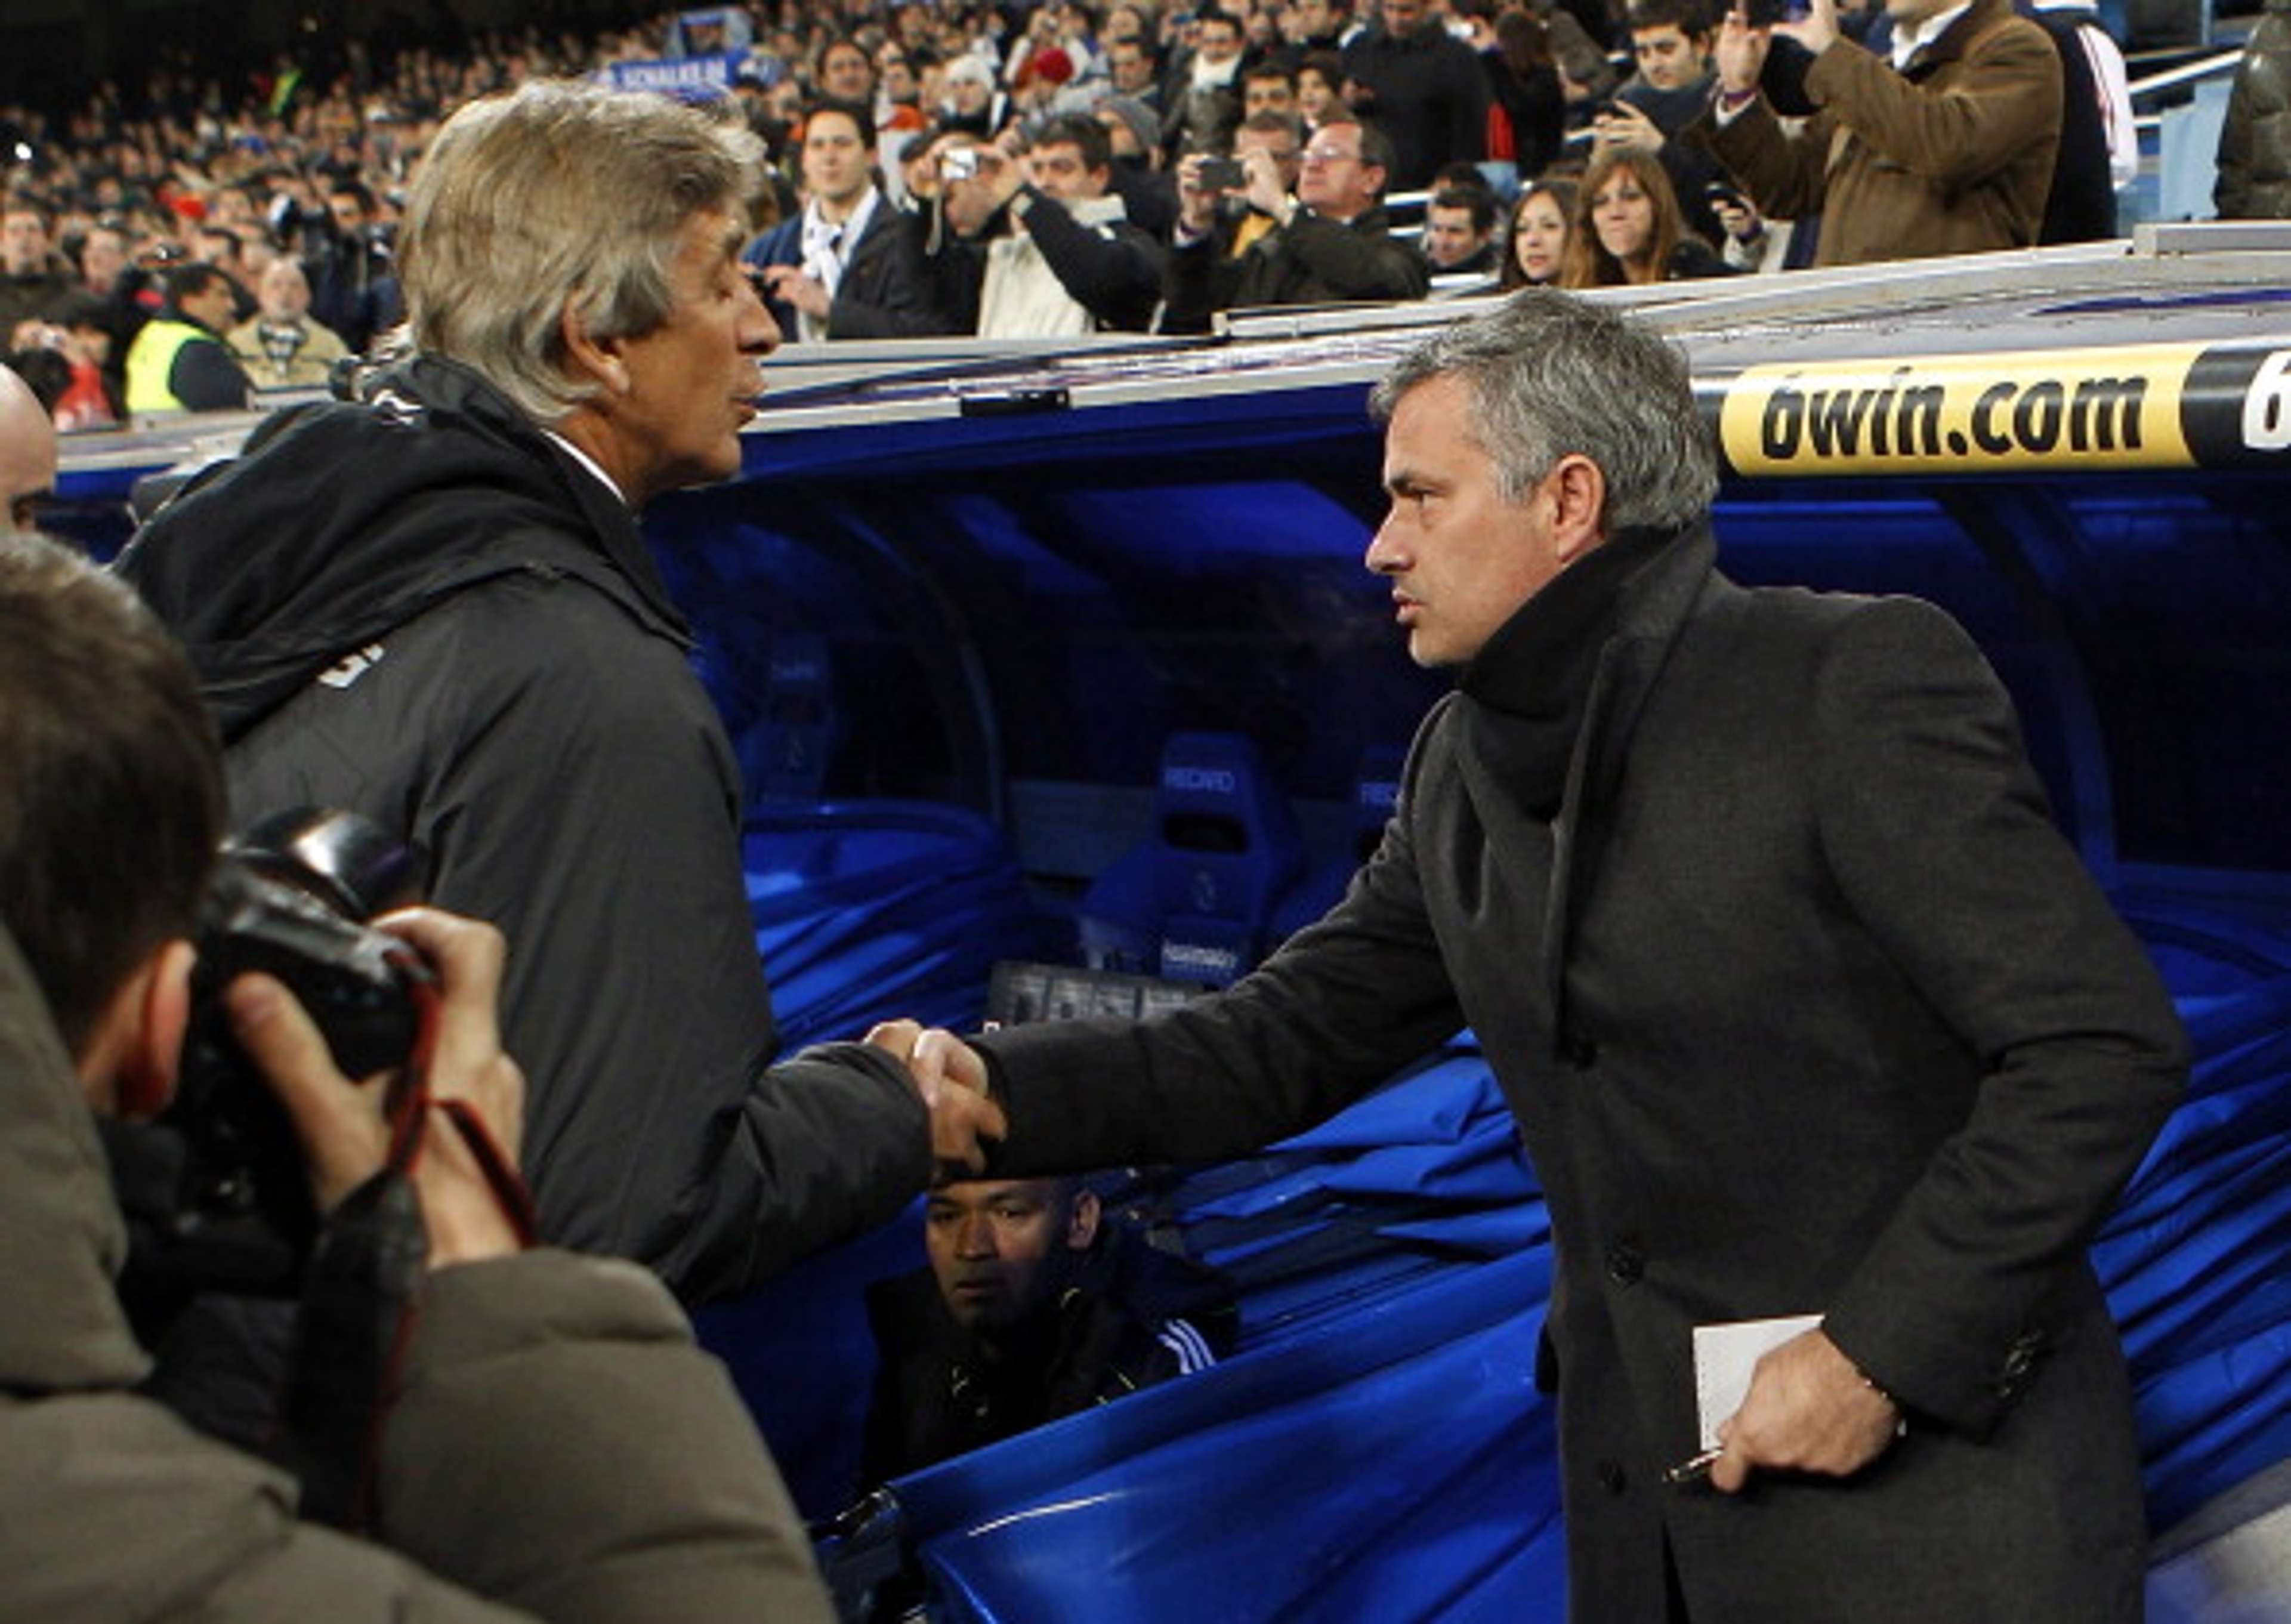 Mourinho ataca: “Si a mí el Madrid me echa, no me voy a entrenar al Málaga”. Marzo de 2011.